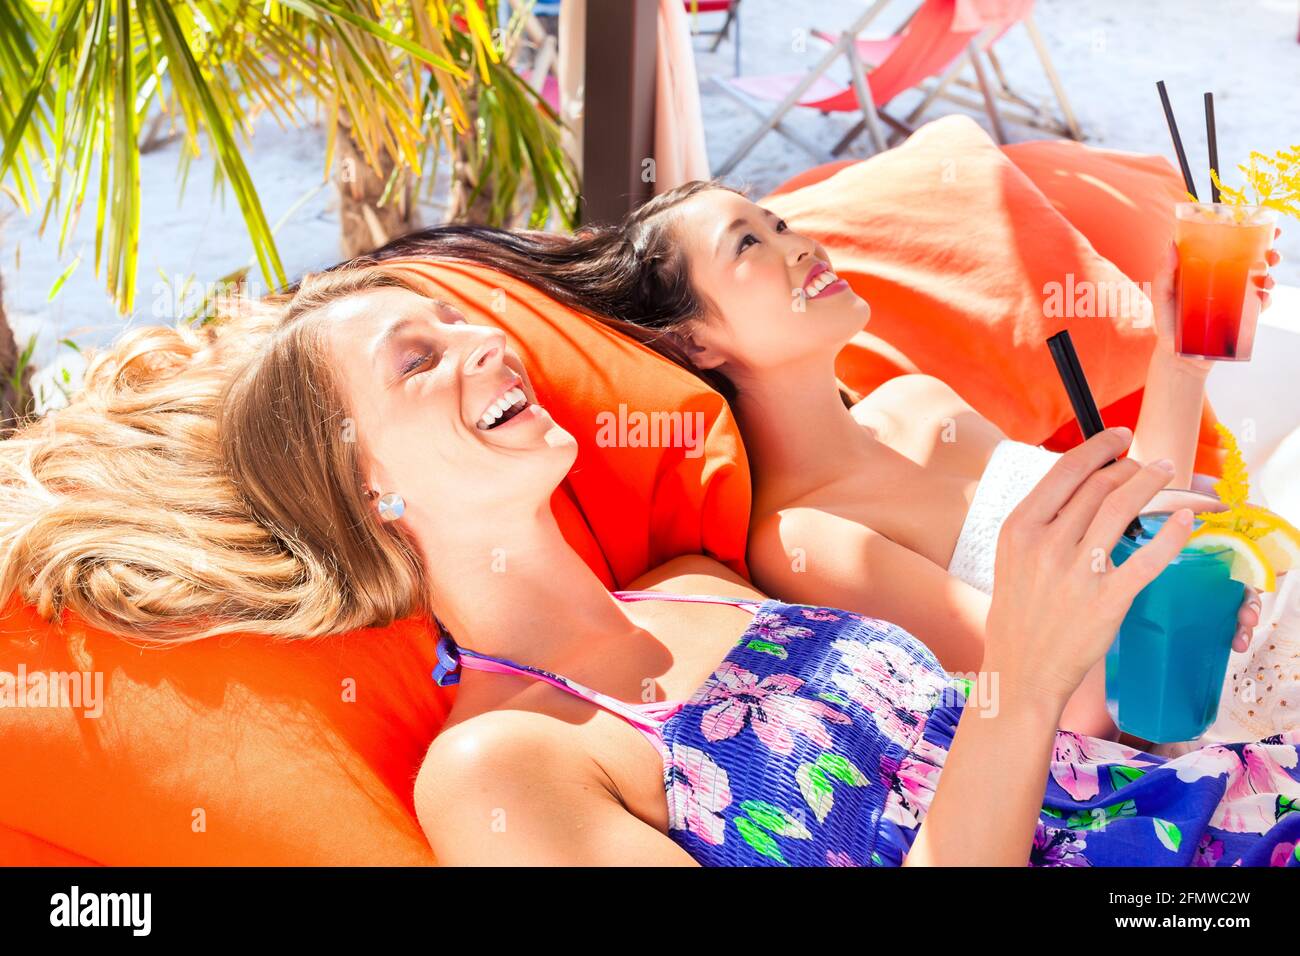 concept de vacances, deux jeunes femmes la plage Banque D'Images